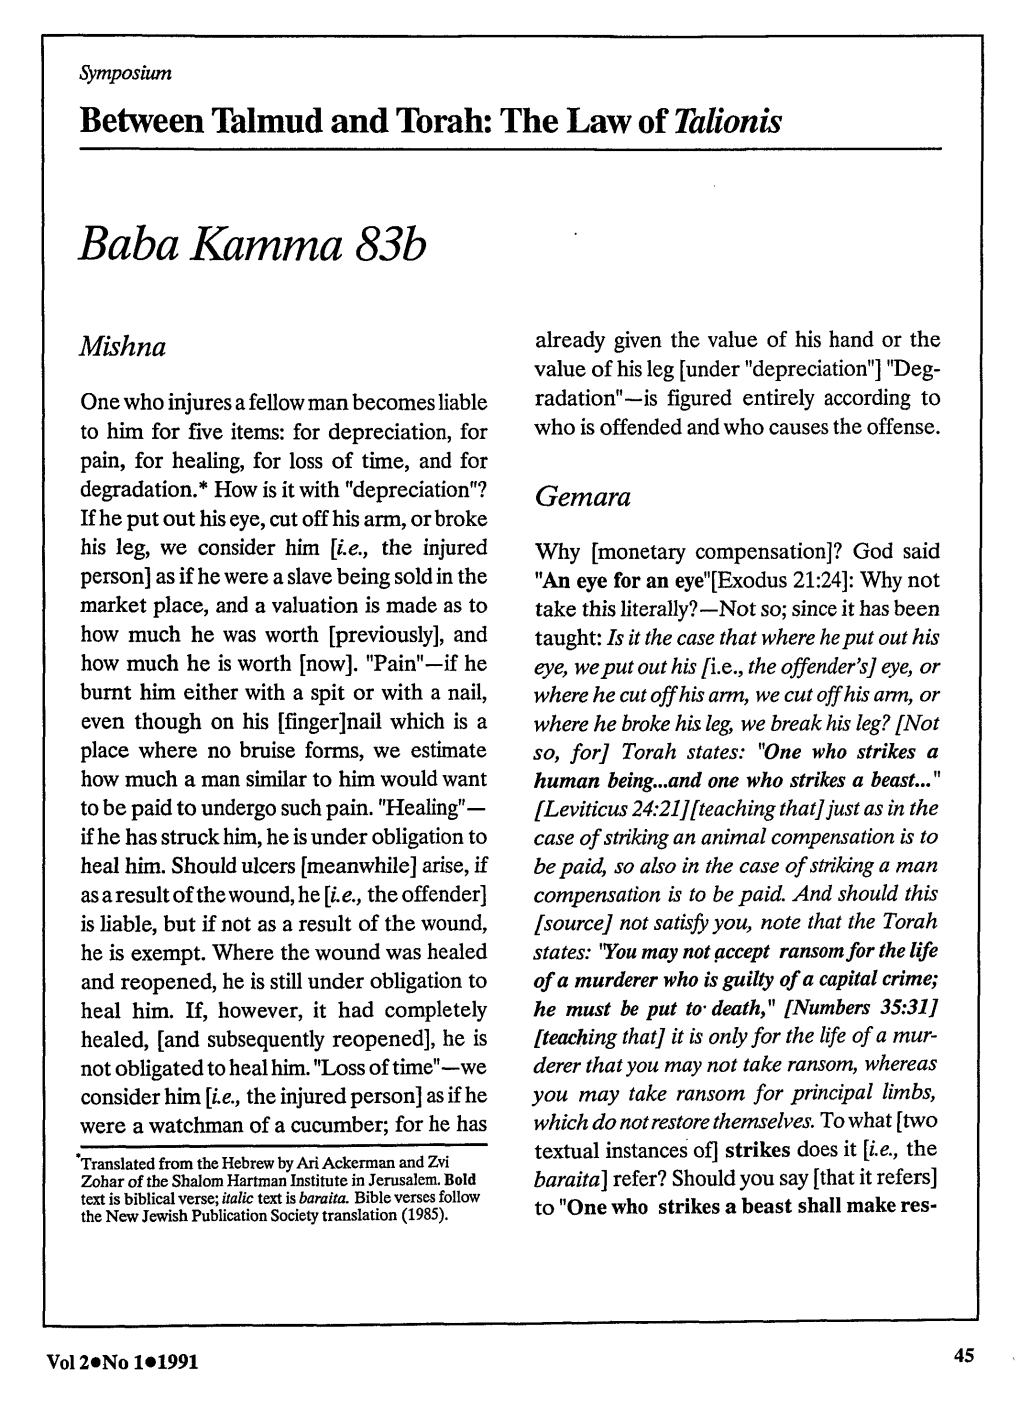 Baba Kamma 83B